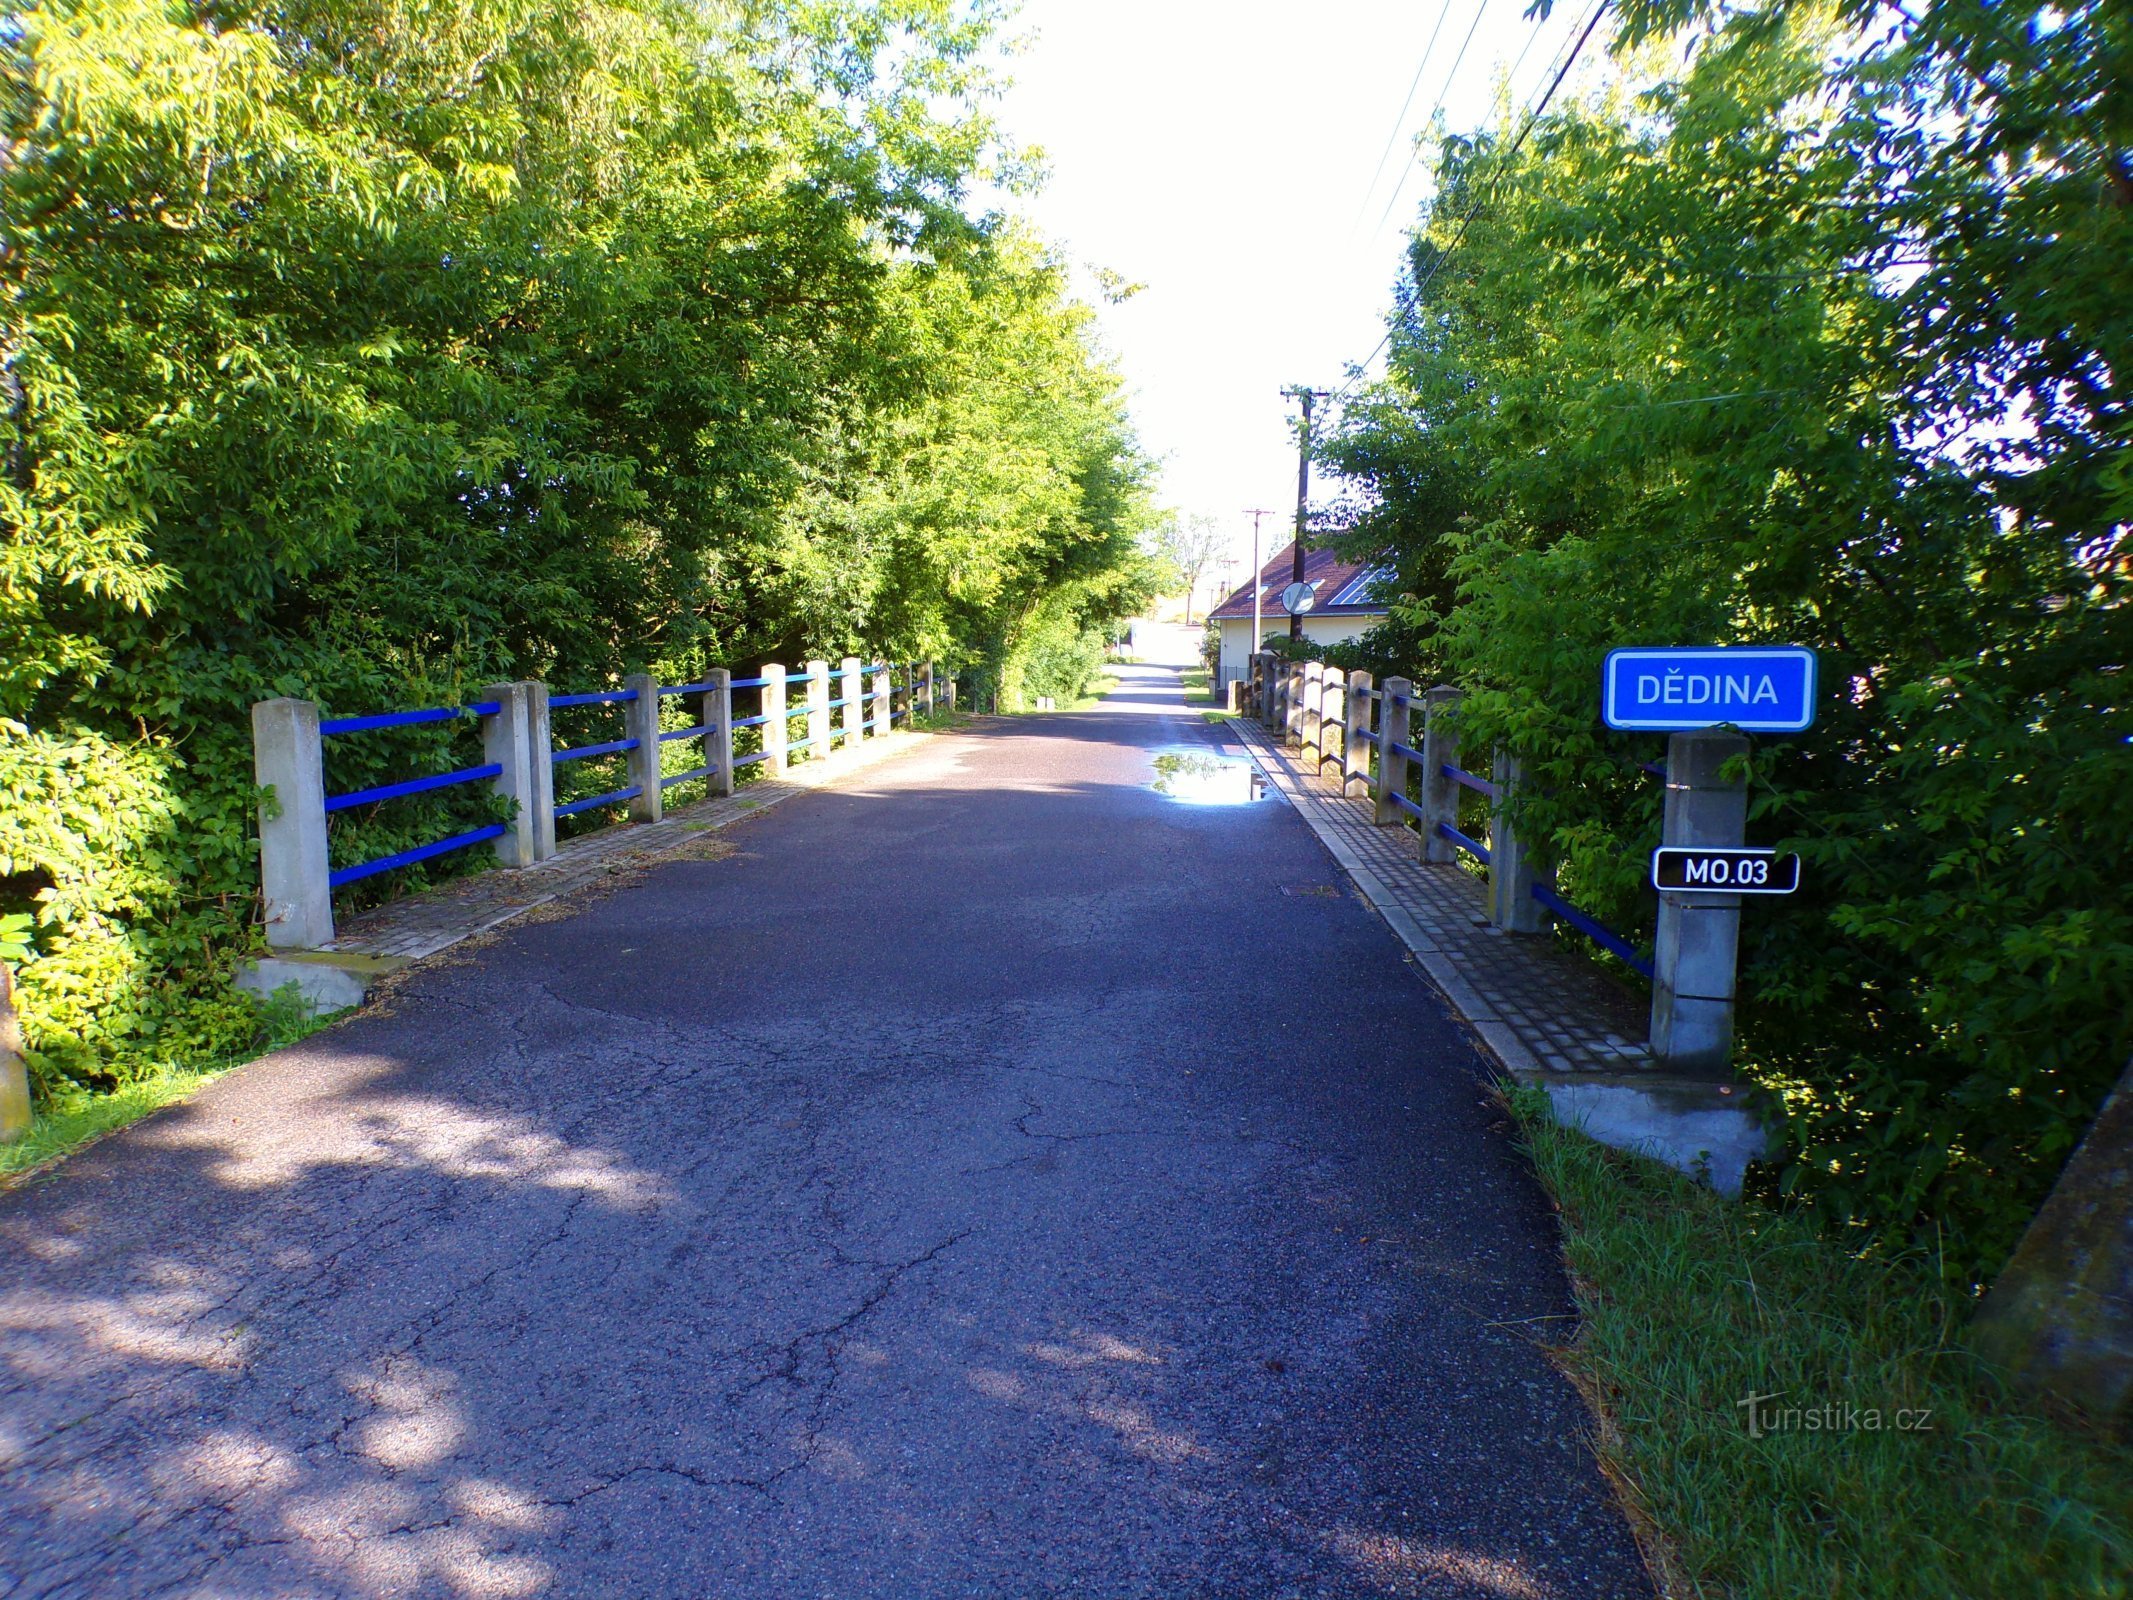 Cầu qua Dědina từ Mitrov đến Polánek nad Dědinou (10.7.2022/XNUMX/XNUMX)